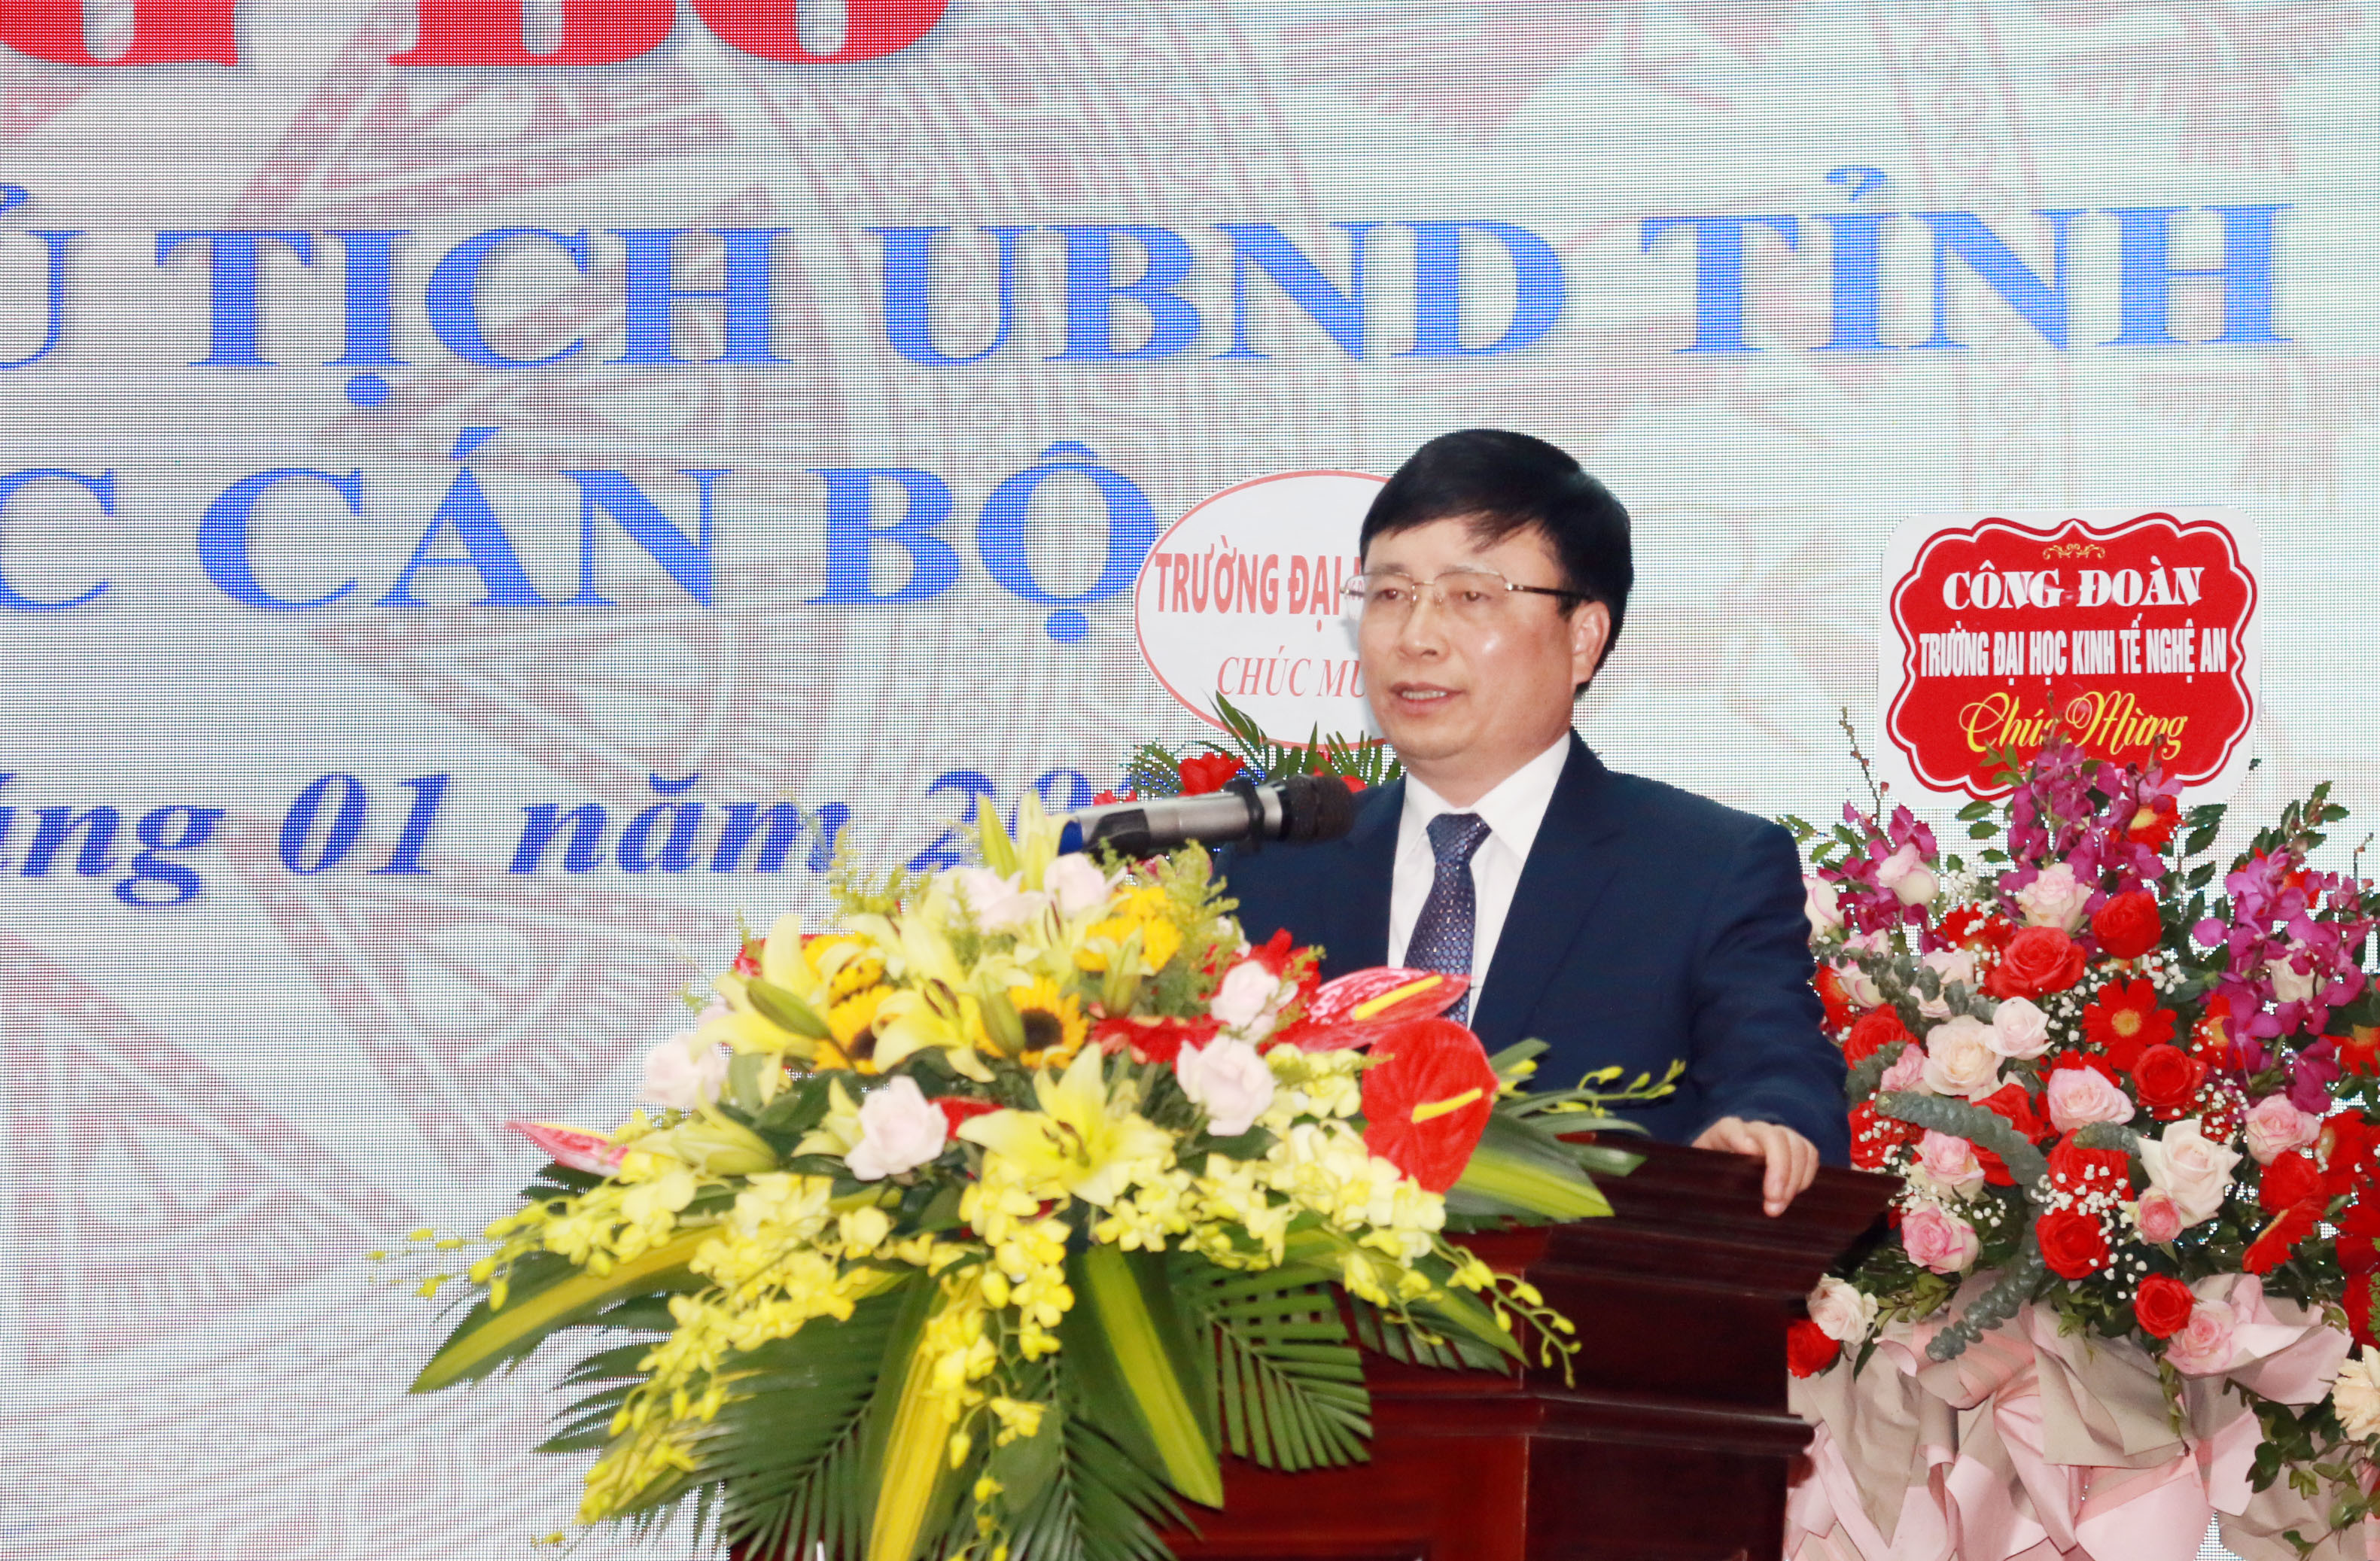 Đồng chí Bùi Đình Long phát biểu tại buổi lễ trao quyết định. Ảnh: MH